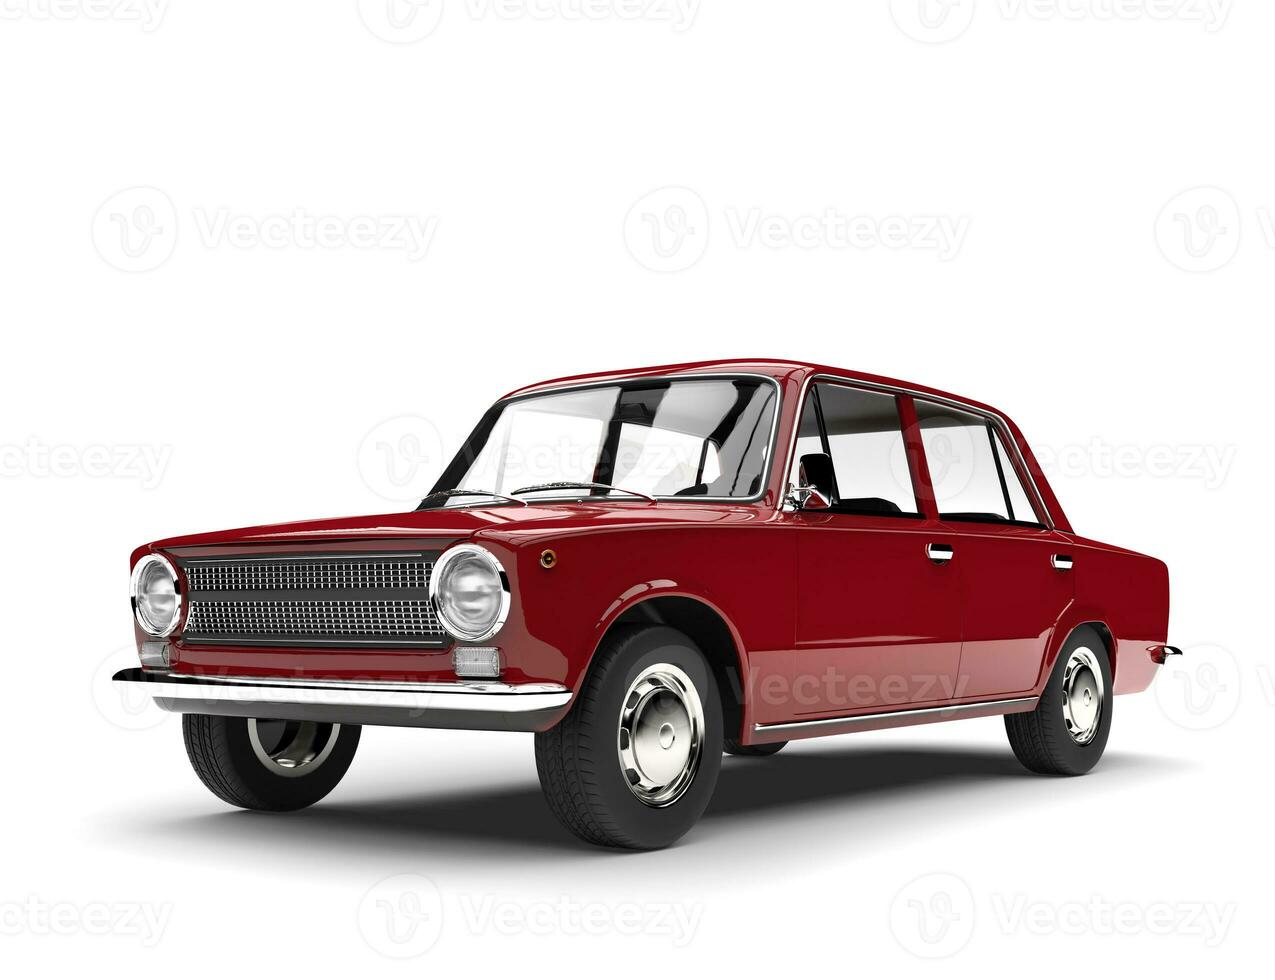 metálico rojo Soviético era Clásico coche foto